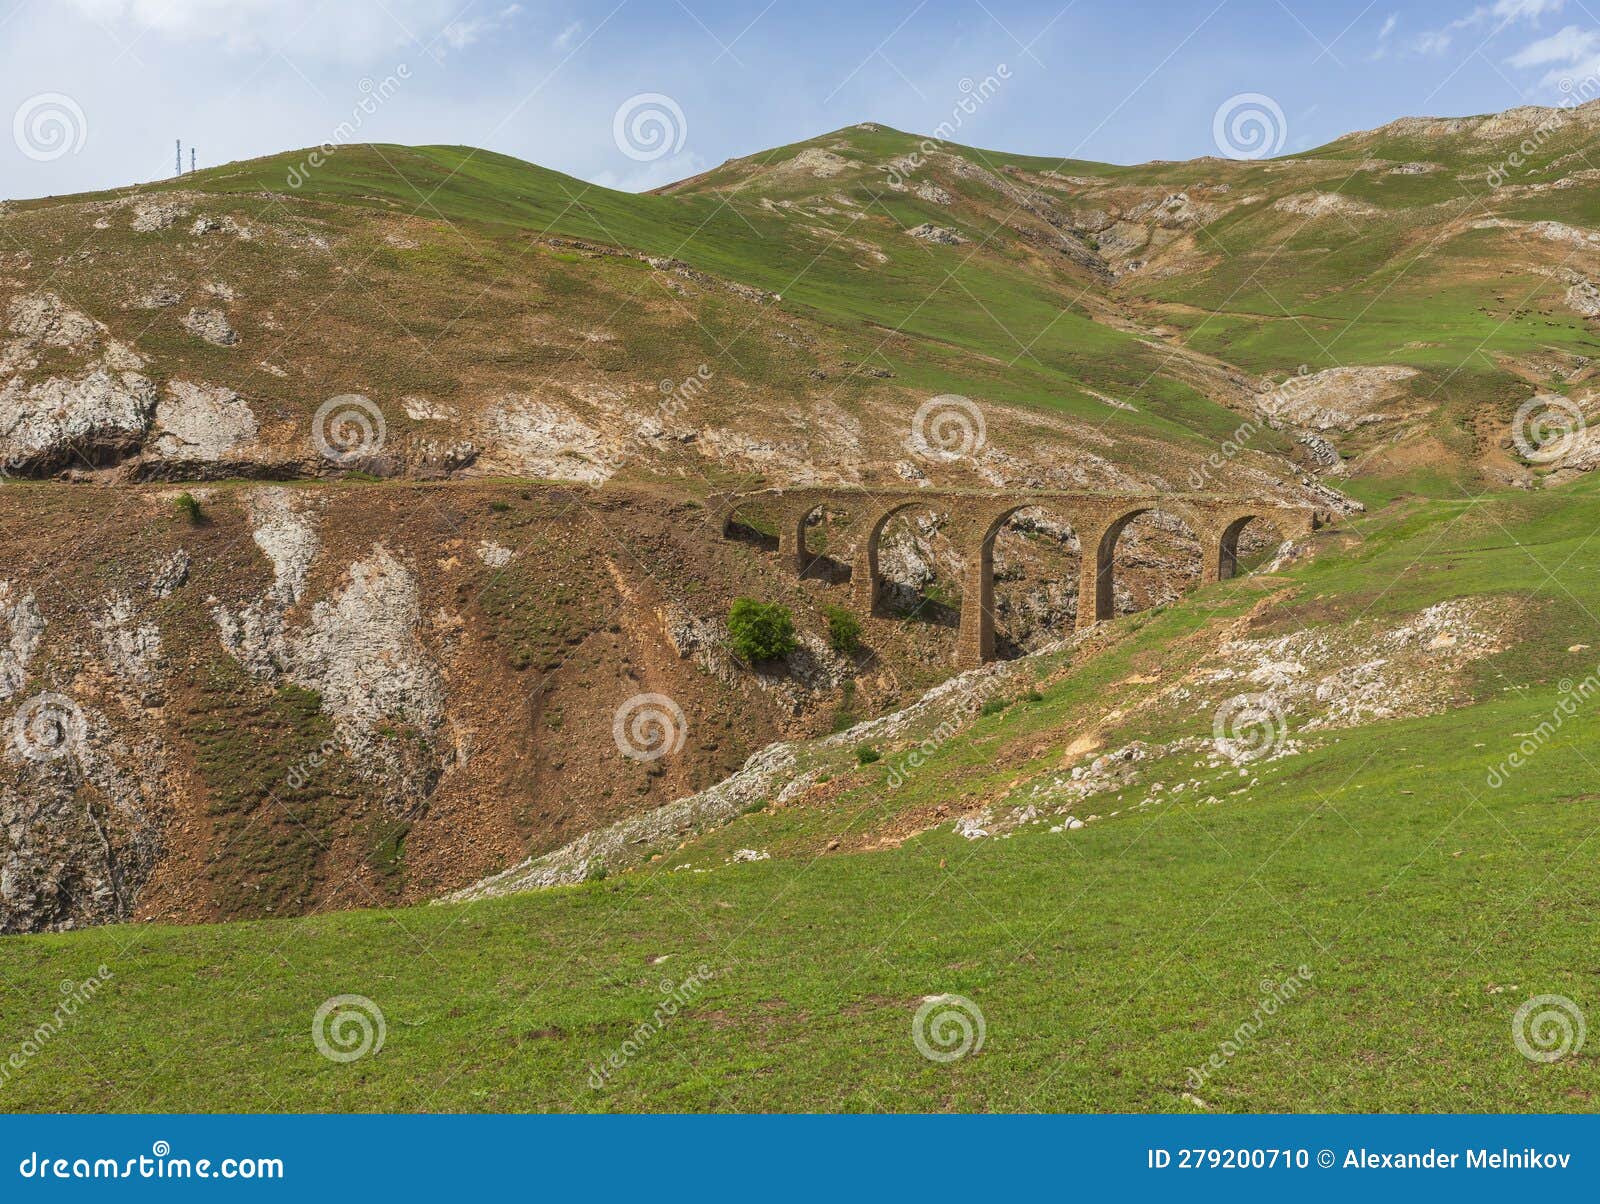 Un antiguo puente construido por los hermanos siemens en azerbaiyán. viajar